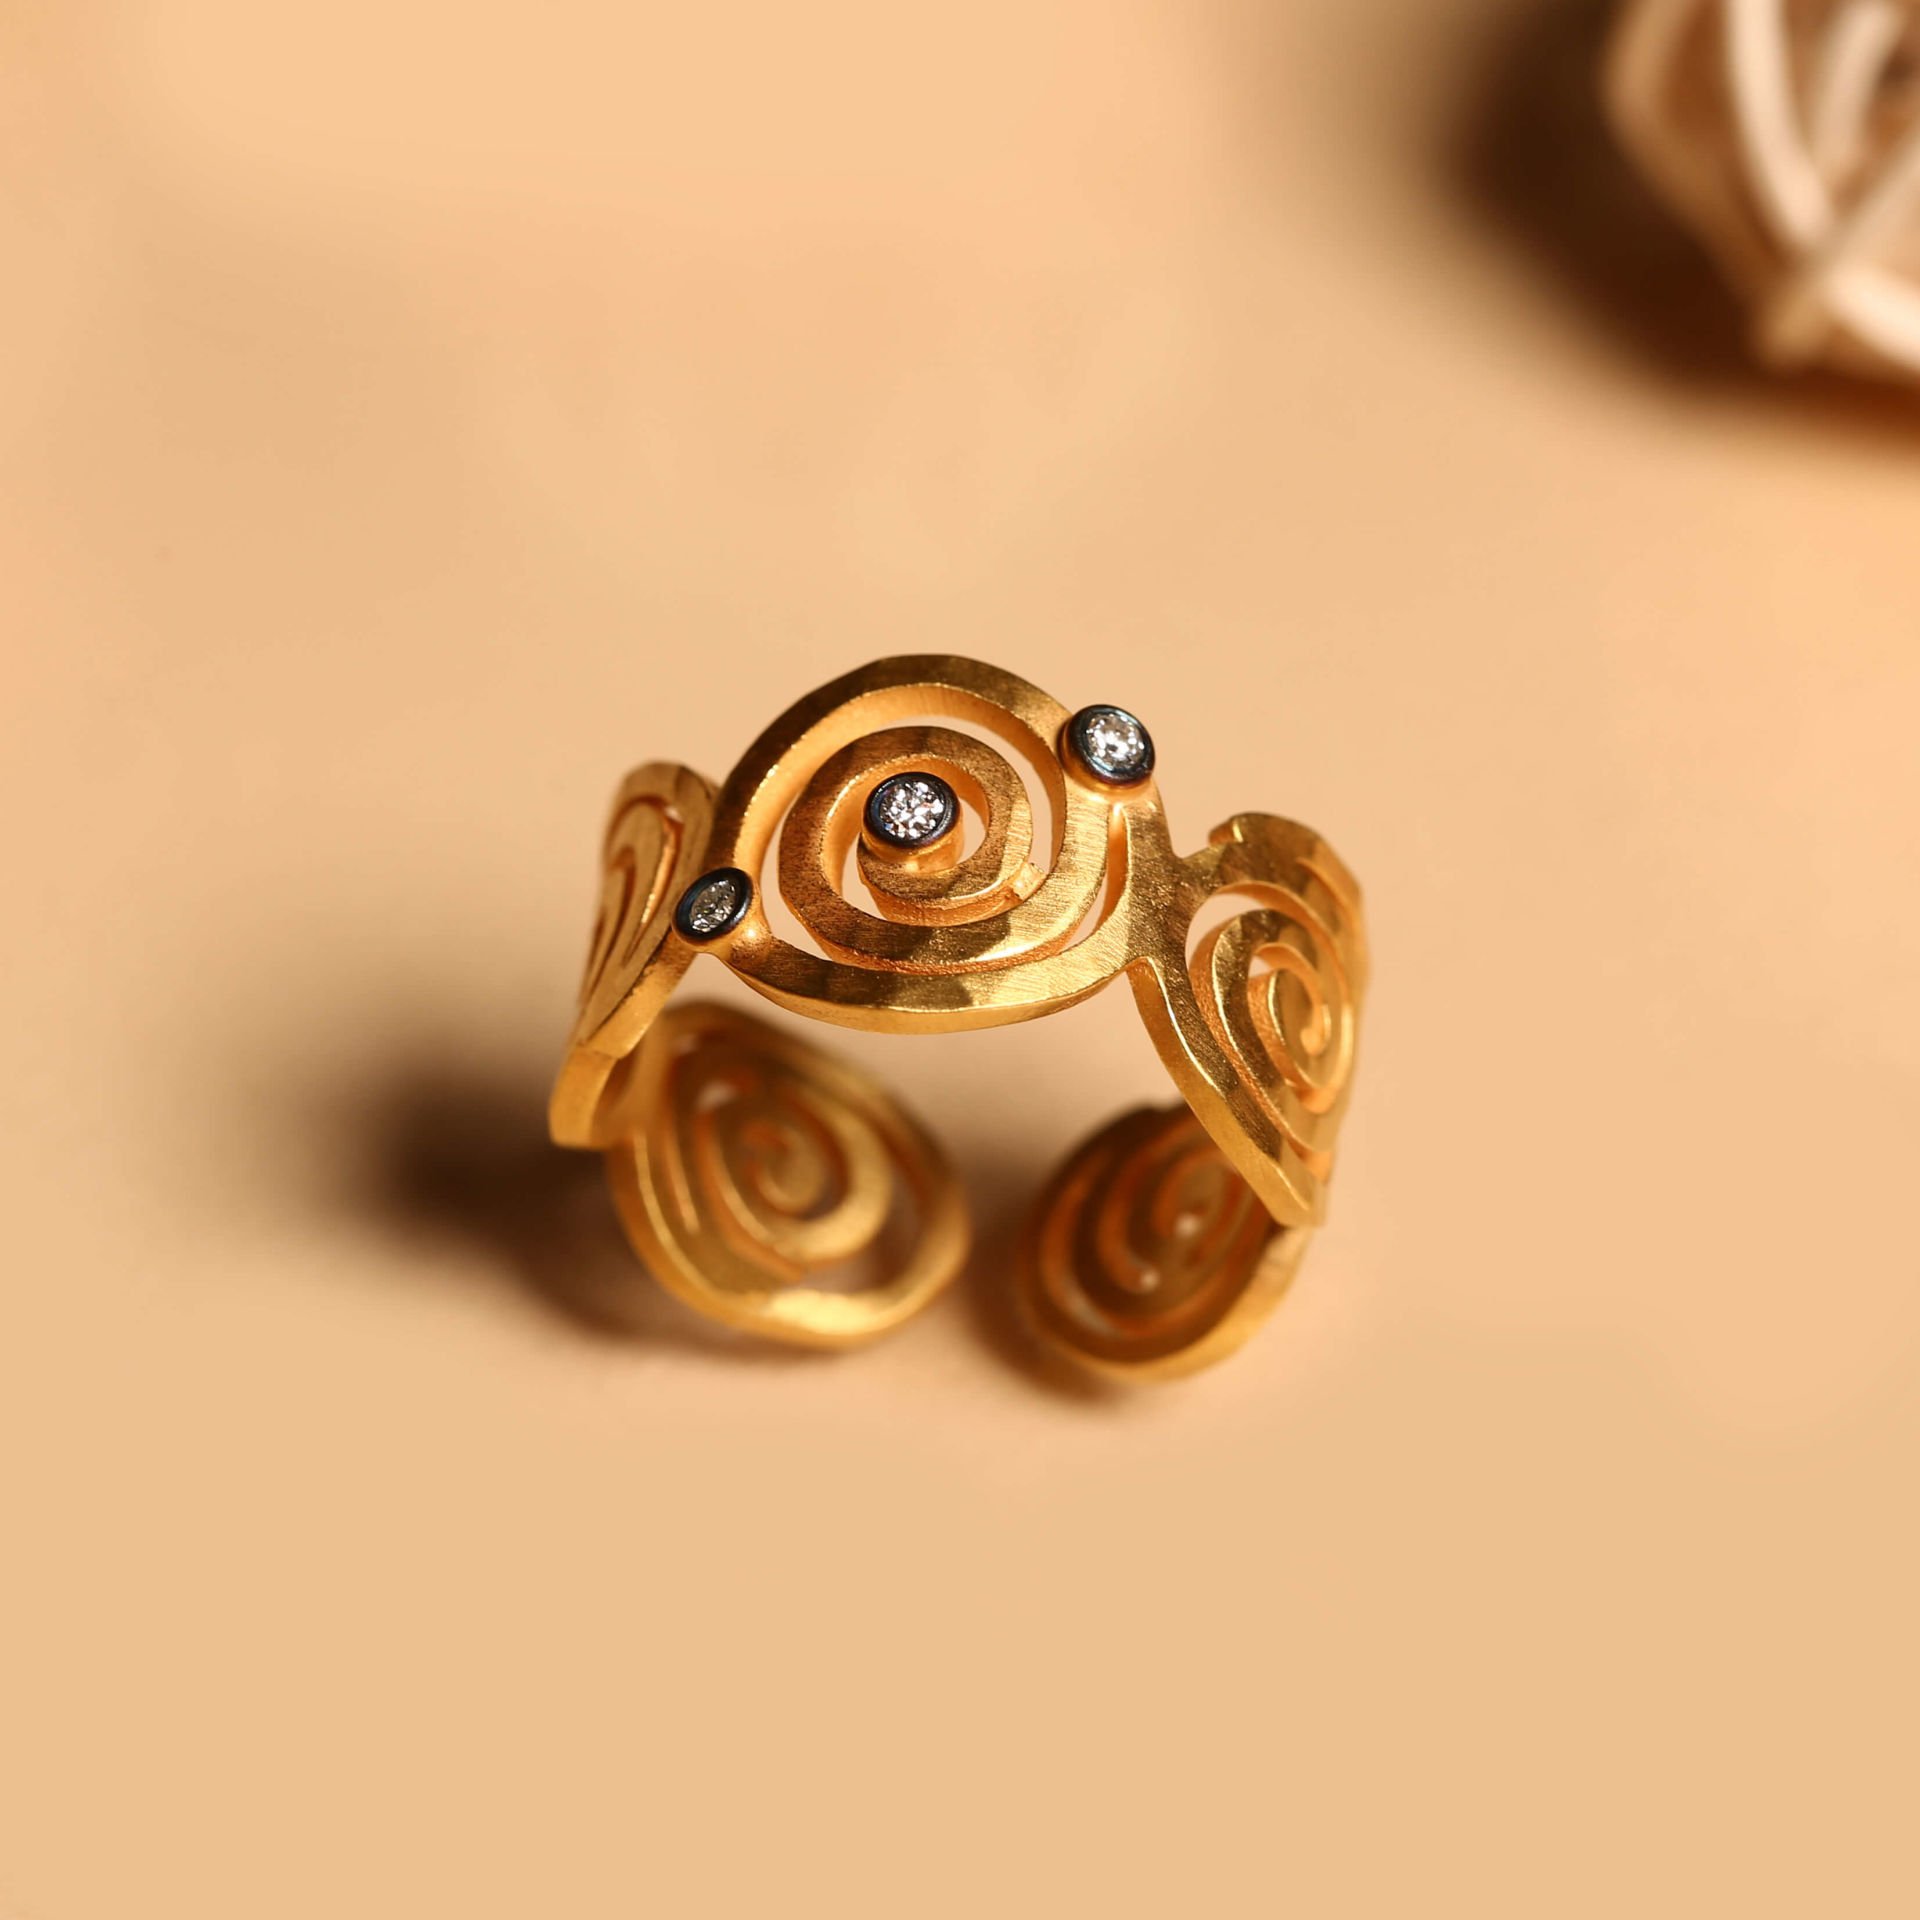 Spiral Designed Ring